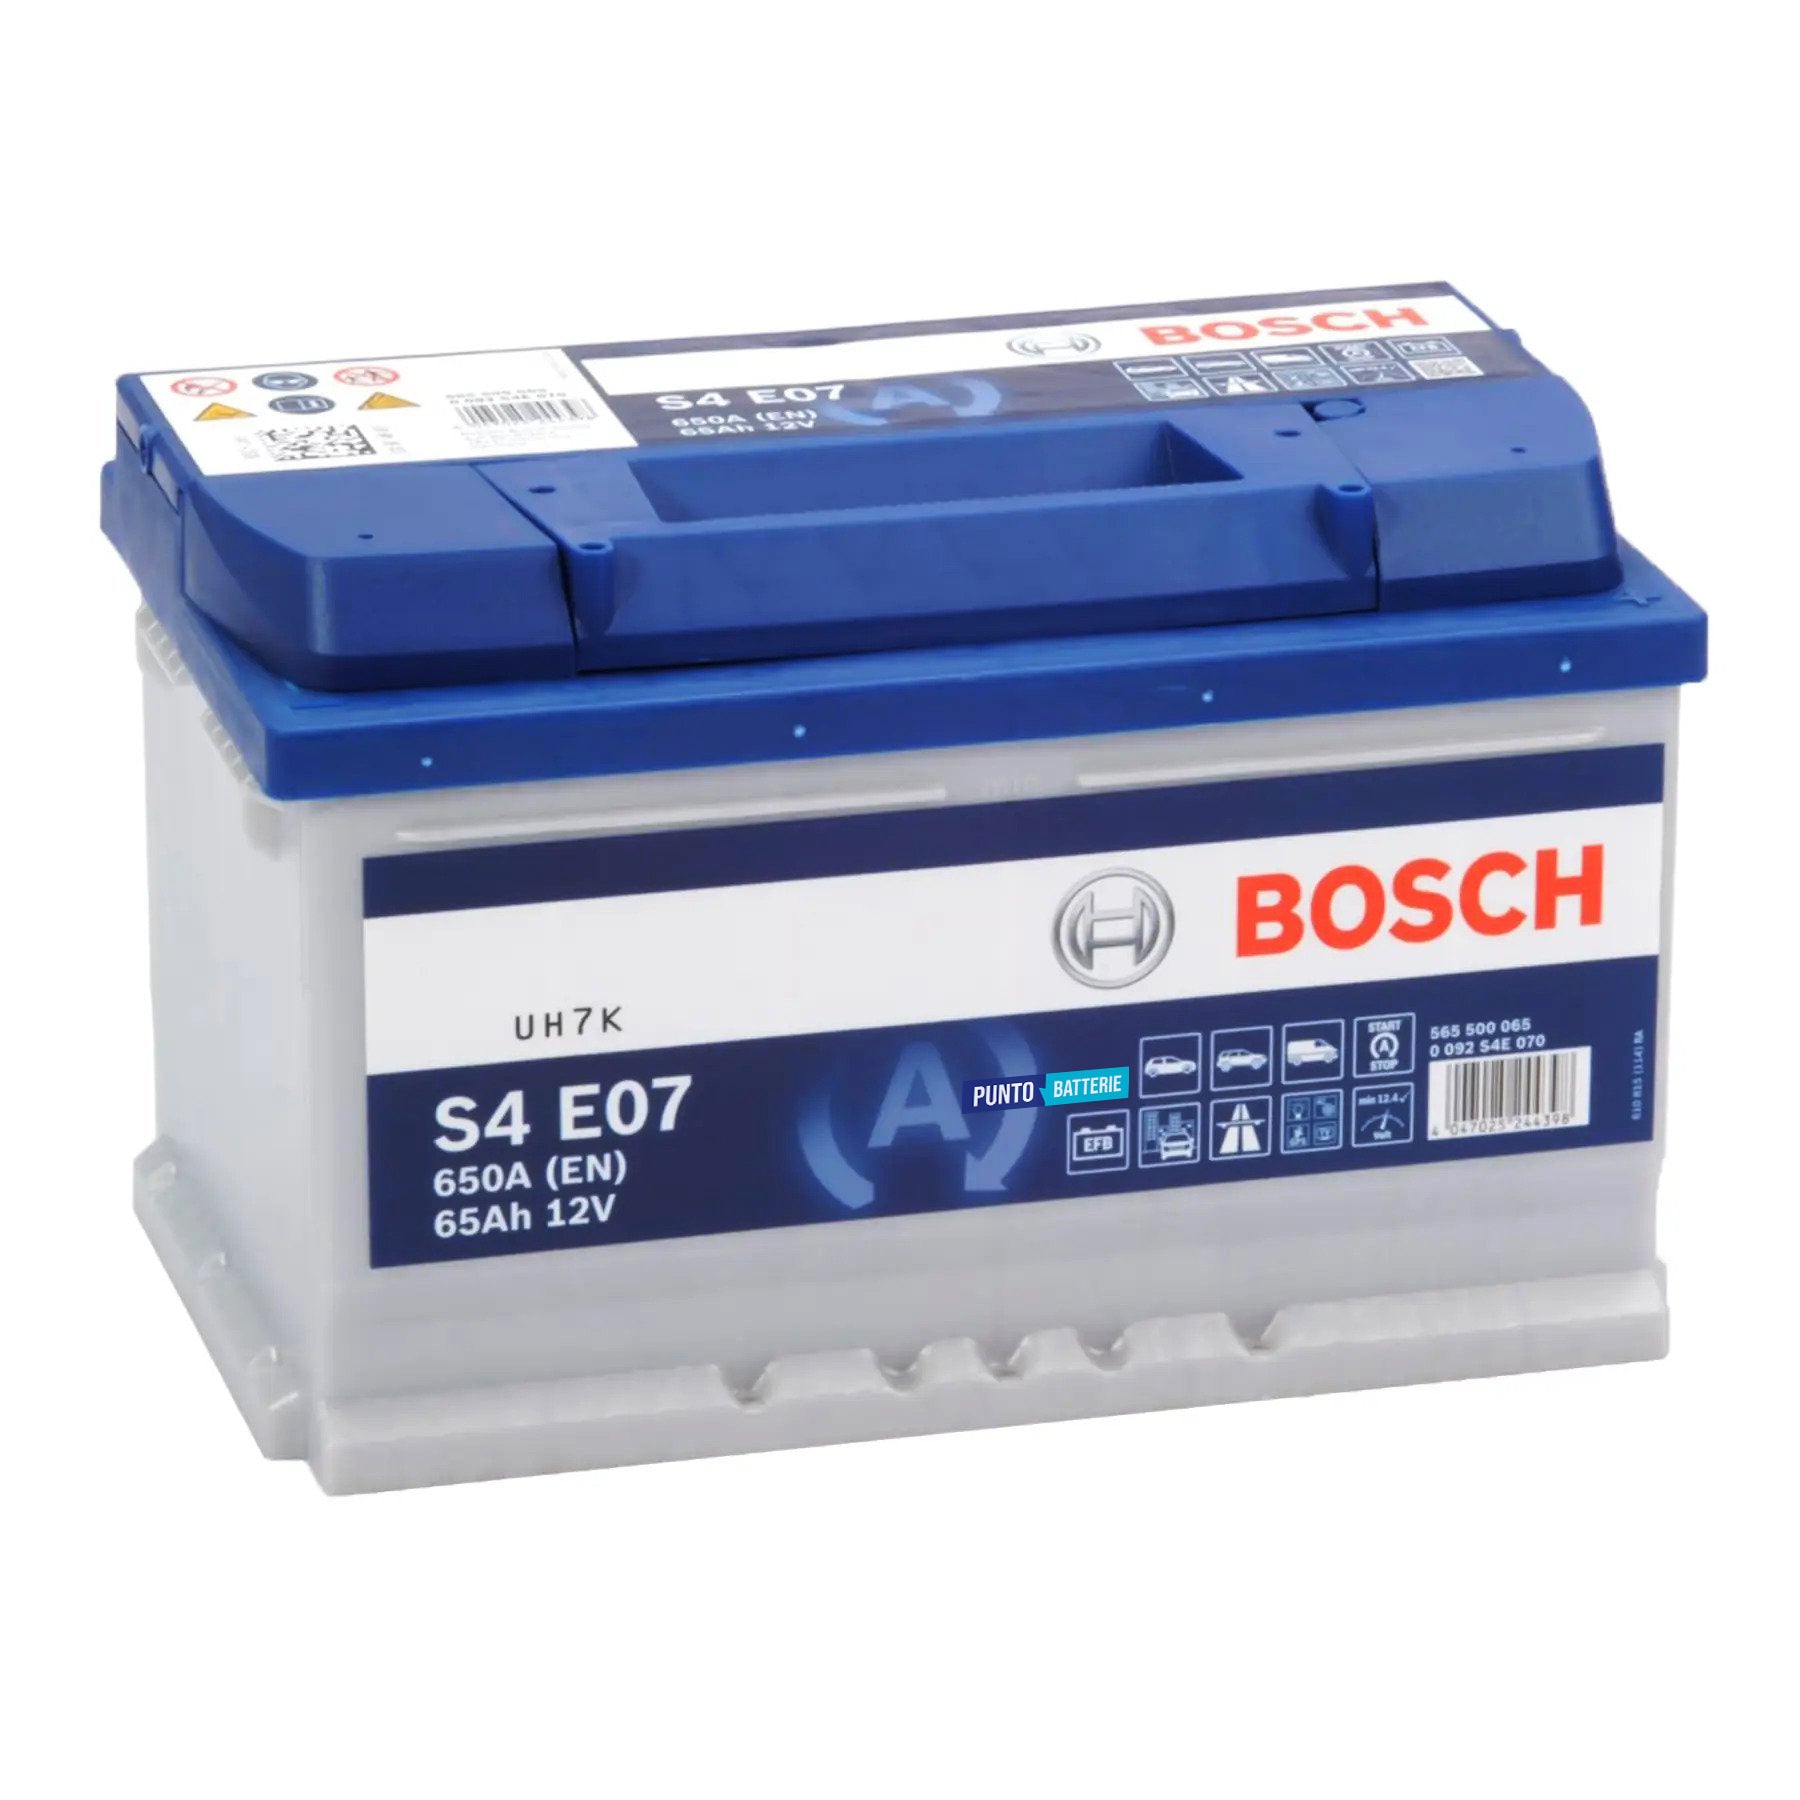 Batteria originale Bosch S4E S4 E07, dimensioni 278 x 175 x 175, polo positivo a destra, 12 volt, 65 amperora, 760 ampere, EFB. Batteria per auto e veicoli leggeri con start e stop.